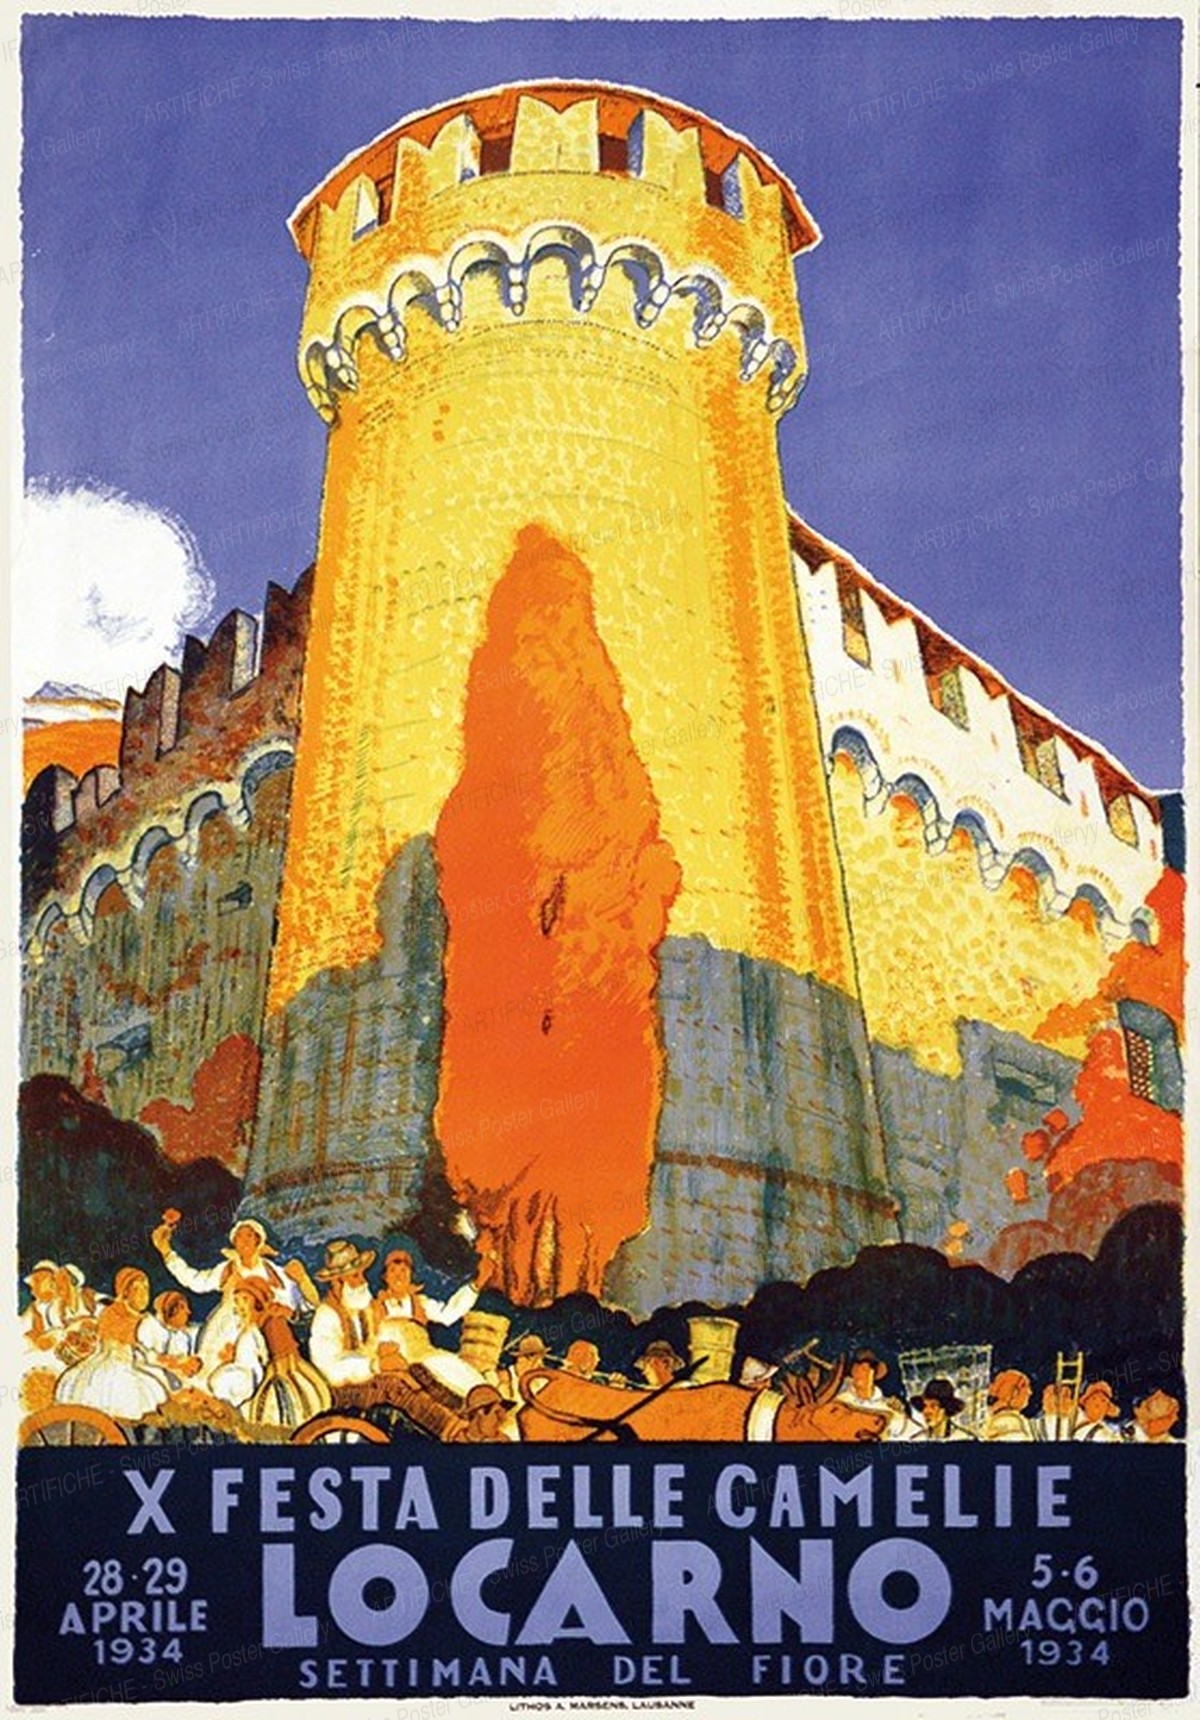 LOCARNO – X. Festa delle Camelie – Settimana del fiore 1934, Daniele Buzzi